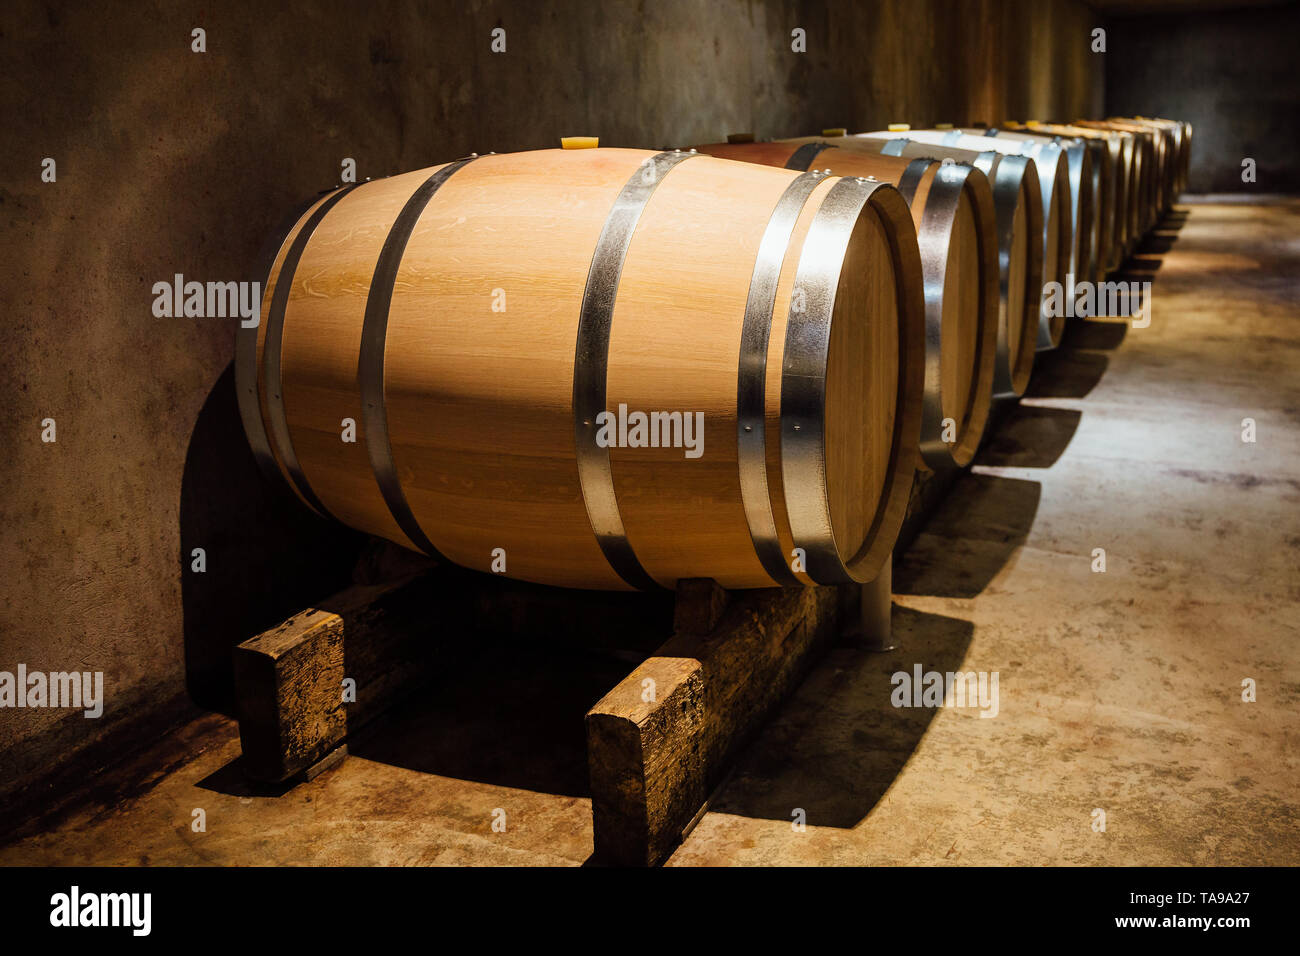 Wine maturing in oak barrels in a cellar. Stock Photo